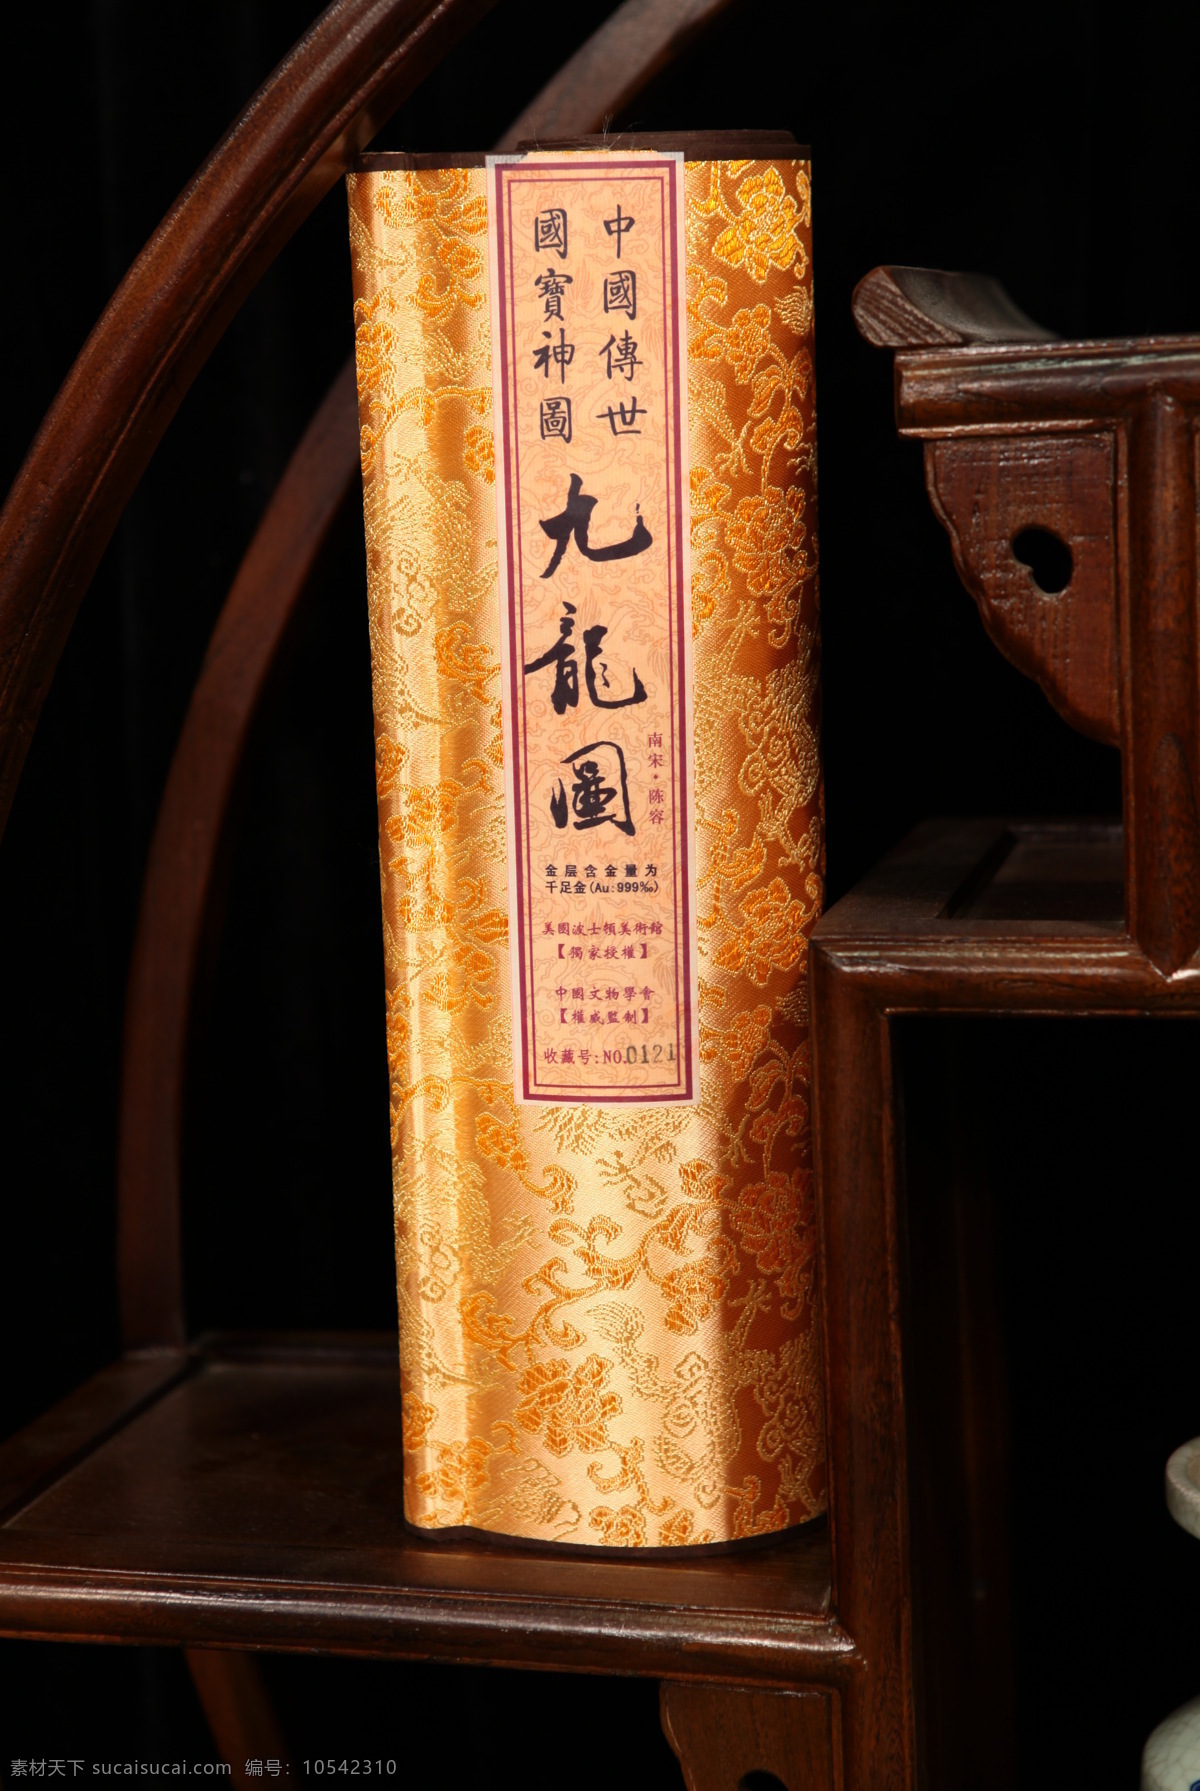 九龙图 玉器 玉雕 玉石 中华 传统 书法 水墨画 足金 金箔 国宝 传统文化 文化艺术